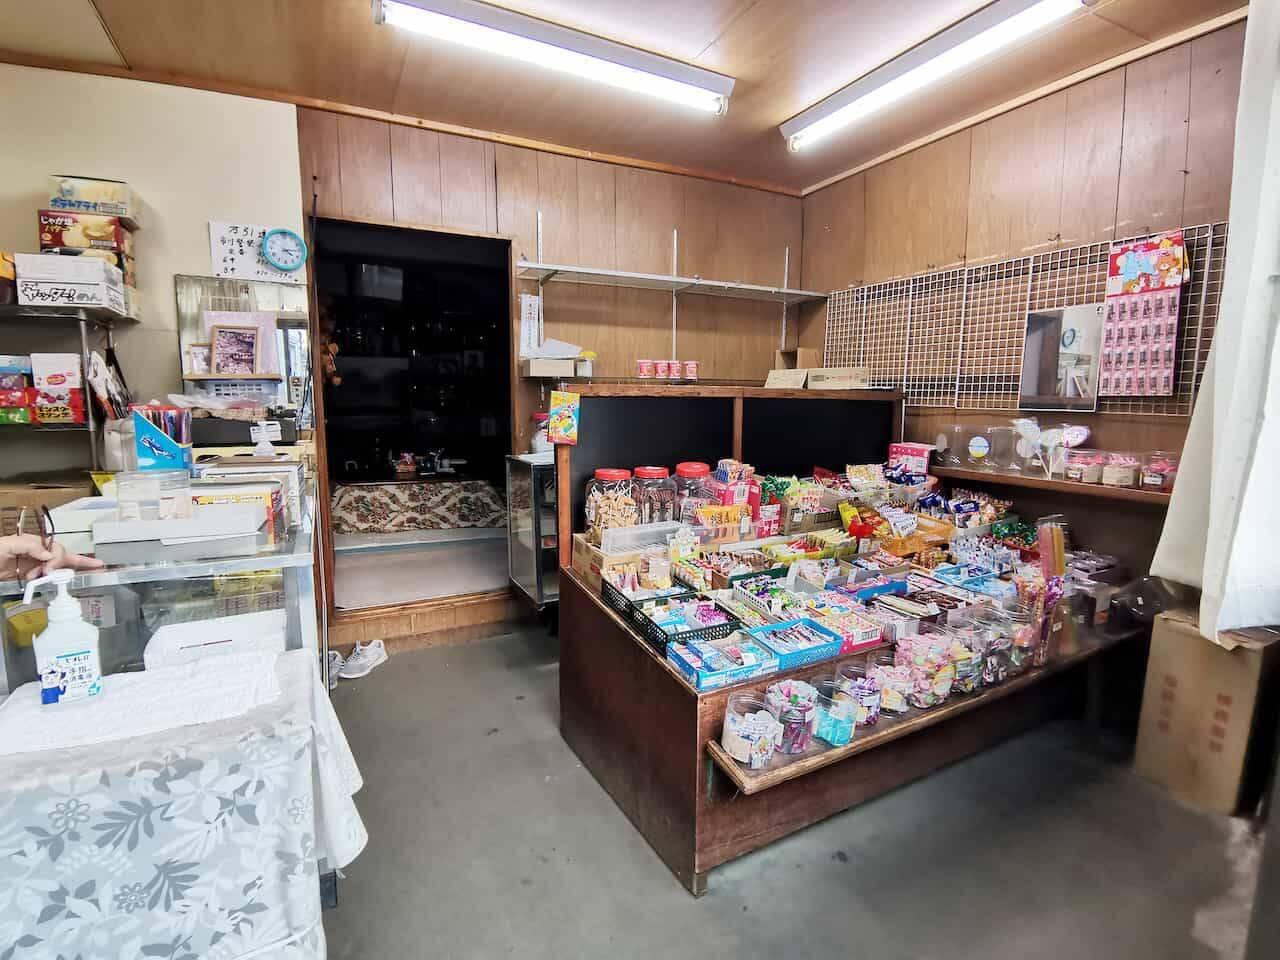 いながきの駄菓子屋探訪71有名アイドルも通った路地裏の店「飯田駄菓子店」